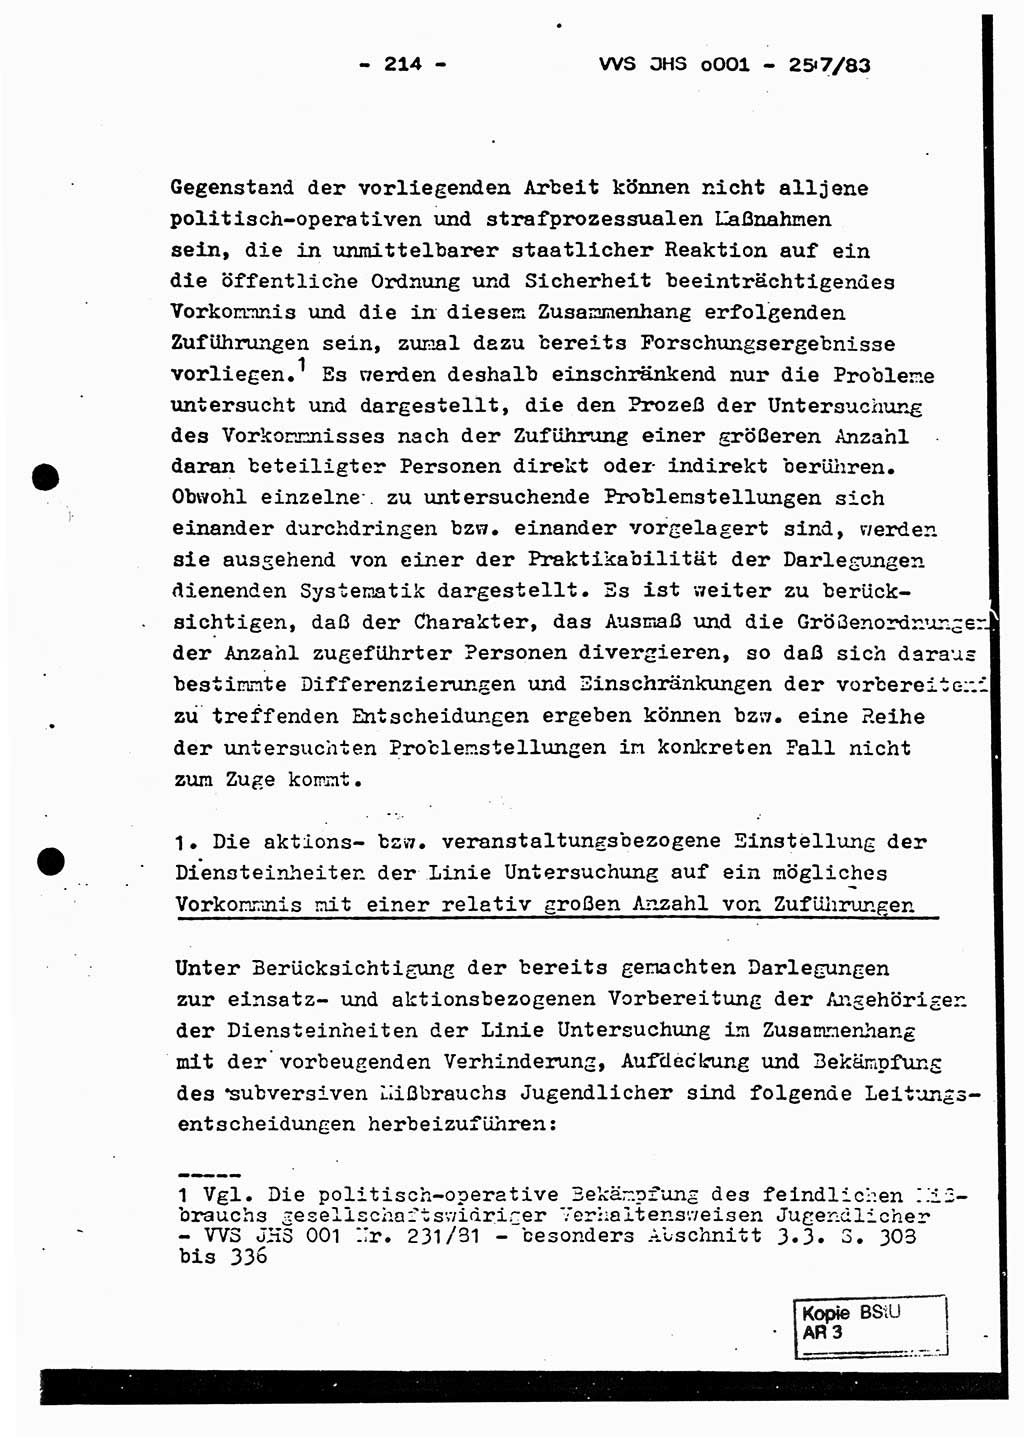 Dissertation, Oberst Helmut Lubas (BV Mdg.), Oberstleutnant Manfred Eschberger (HA IX), Oberleutnant Hans-Jürgen Ludwig (JHS), Ministerium für Staatssicherheit (MfS) [Deutsche Demokratische Republik (DDR)], Juristische Hochschule (JHS), Vertrauliche Verschlußsache (VVS) o001-257/83, Potsdam 1983, Seite 214 (Diss. MfS DDR JHS VVS o001-257/83 1983, S. 214)